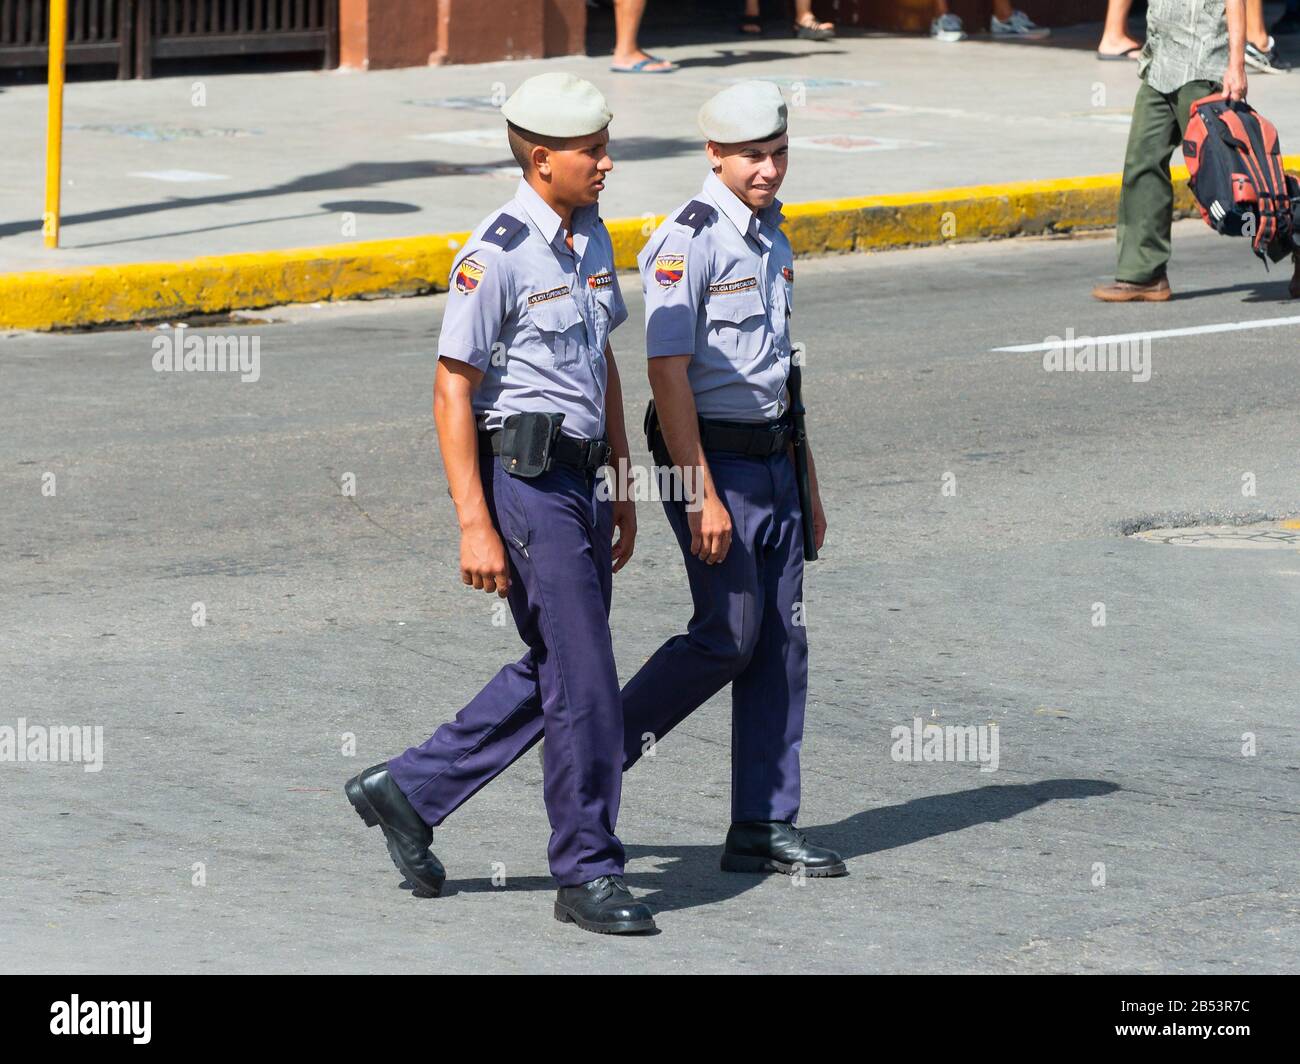 Zwei junge männliche Polizisten in blauer Uniform zu Fuß in Havanna, Kuba im Stadtzentrum. Bullen tragen Beret. Kubanische Behörden. Stockfoto